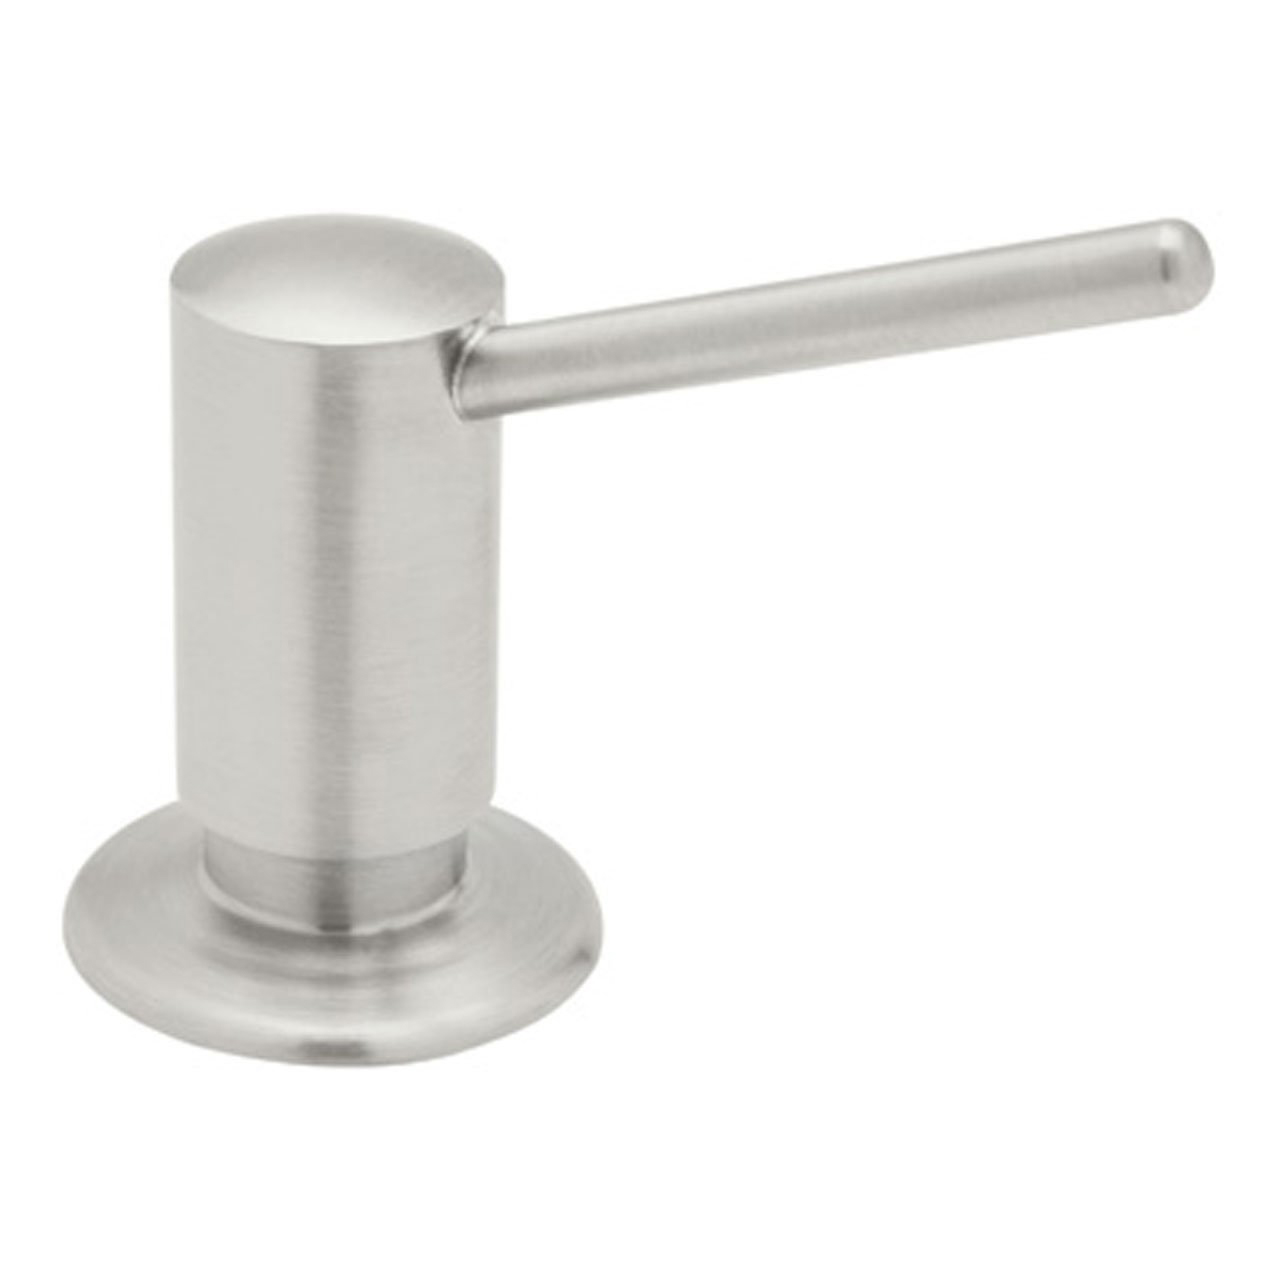 De Lux II Soap/Lotion Dispenser in Stainless Steel